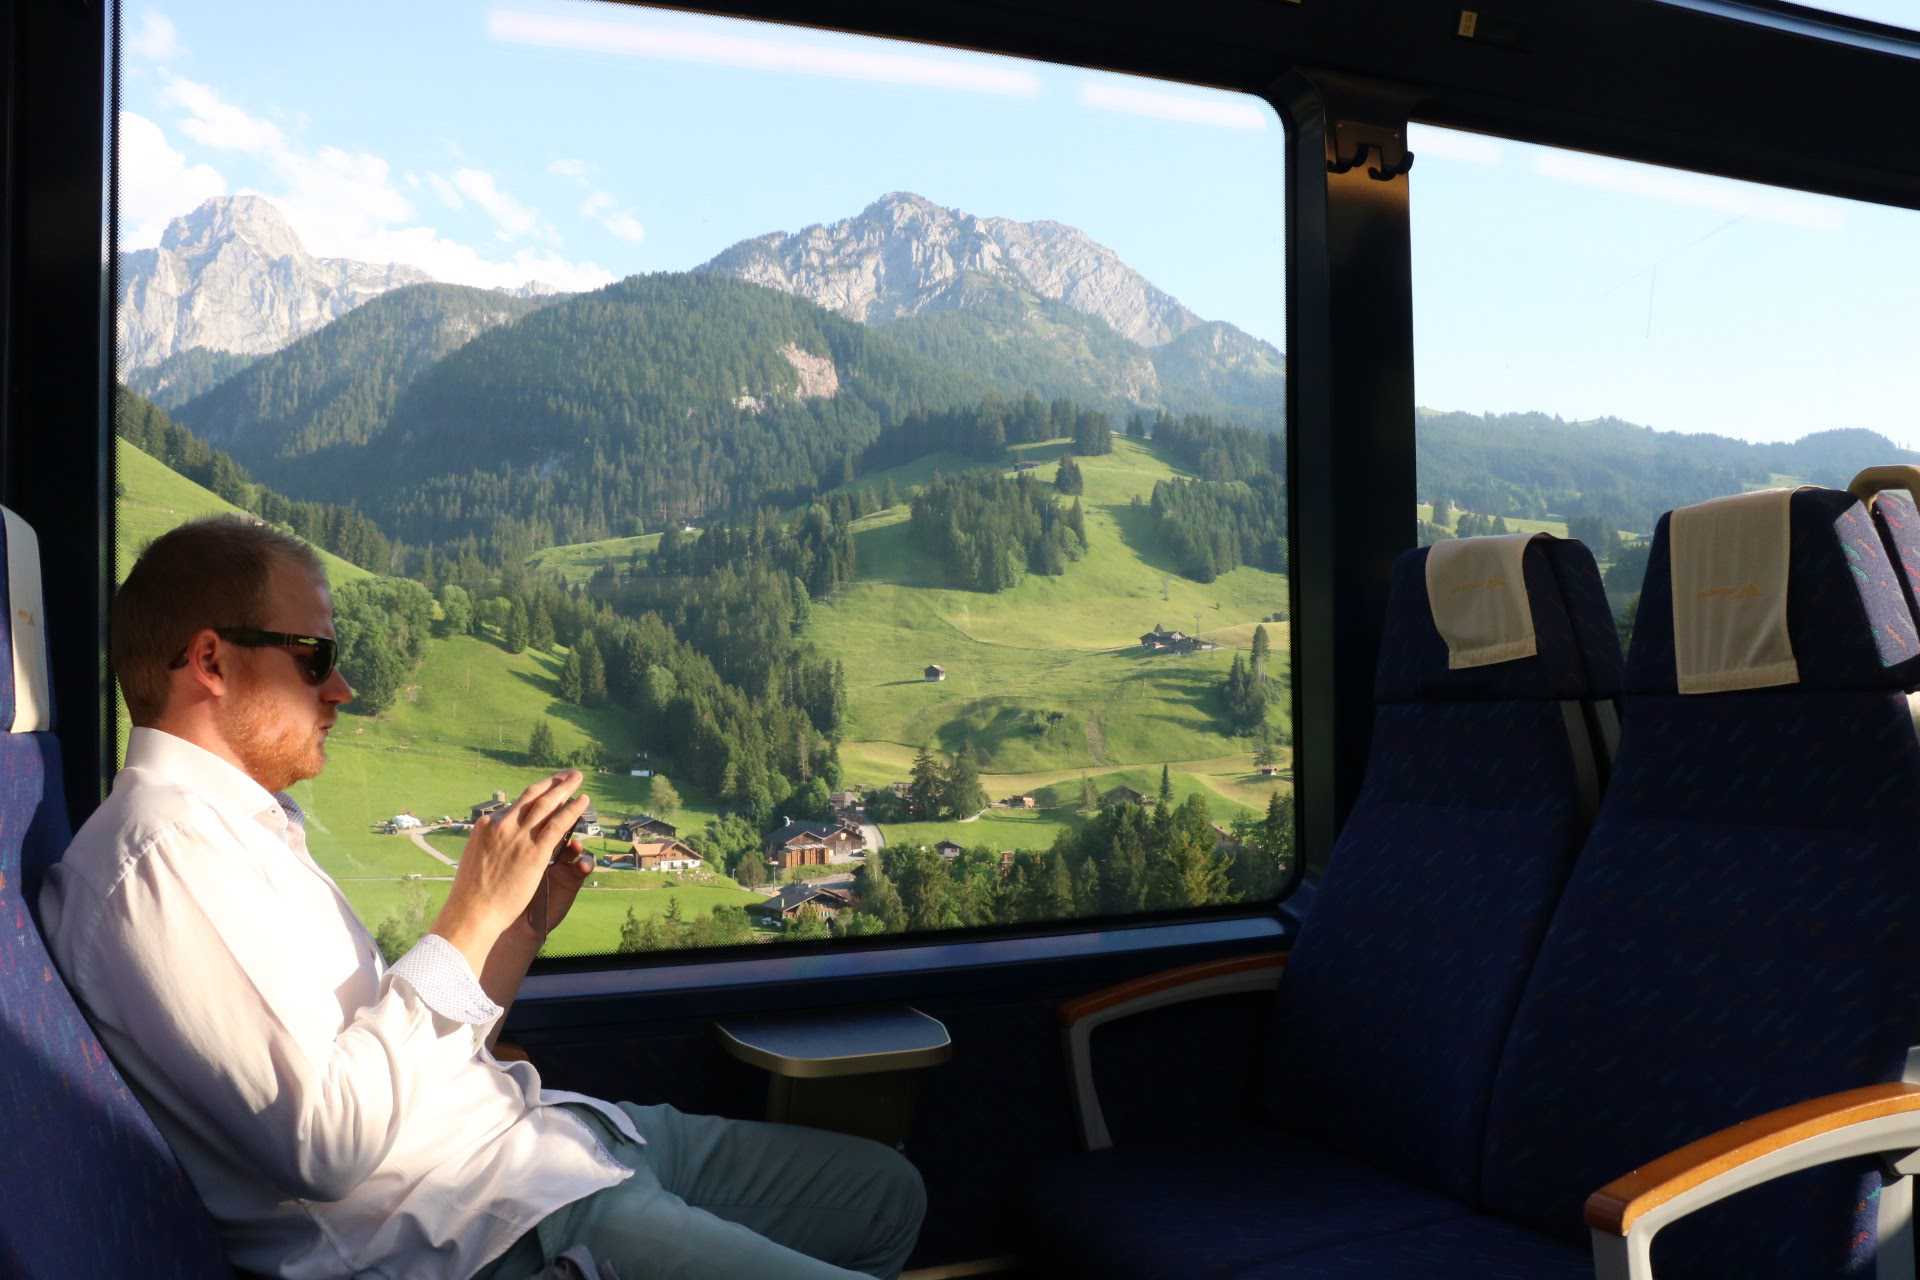 瑞士 | 黃金列車 Golden Pass | 經典瑞士火車之旅